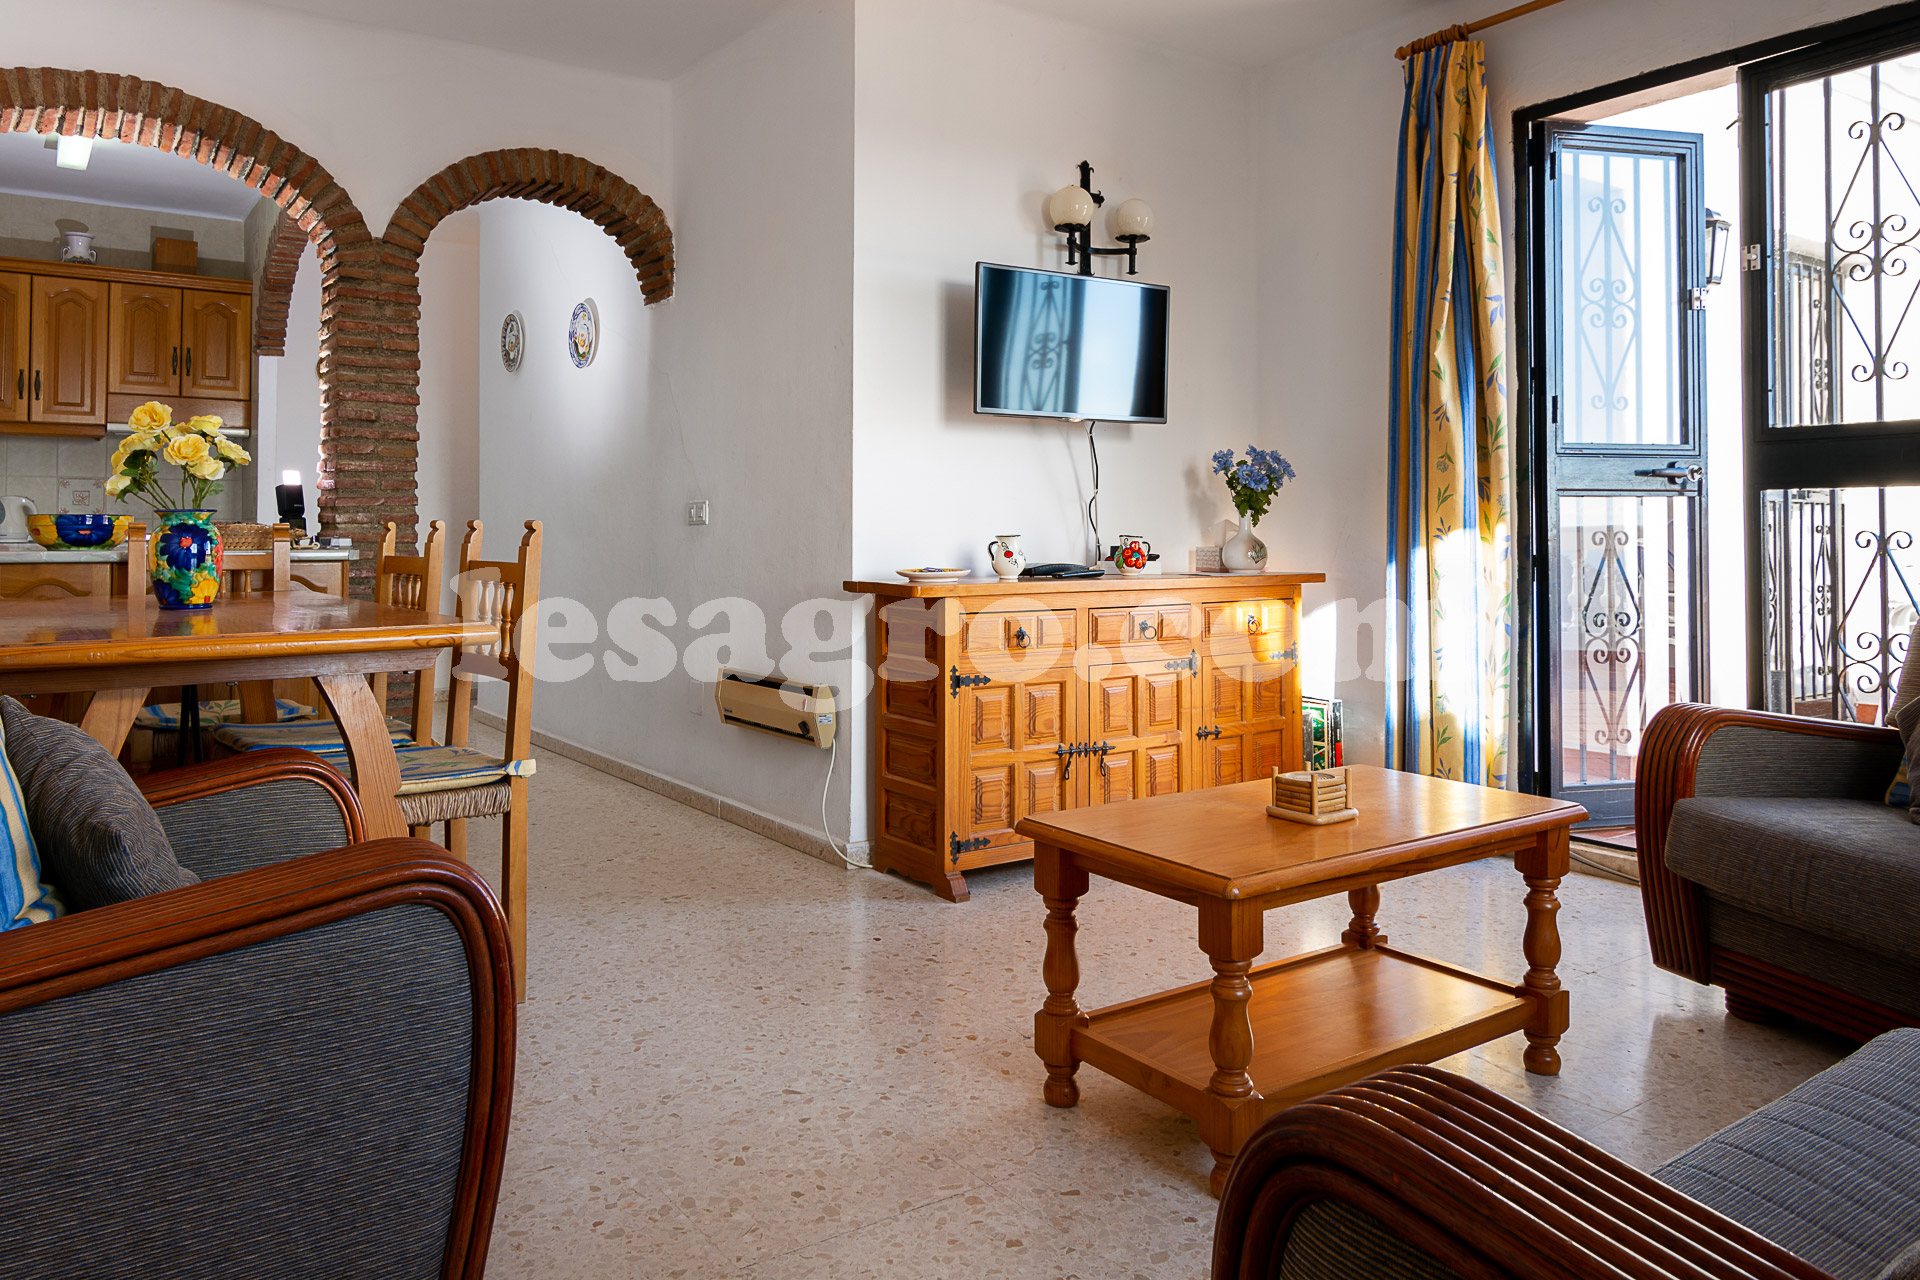 2 bedroomed property in Oasis de Capistrano for sale Nerja